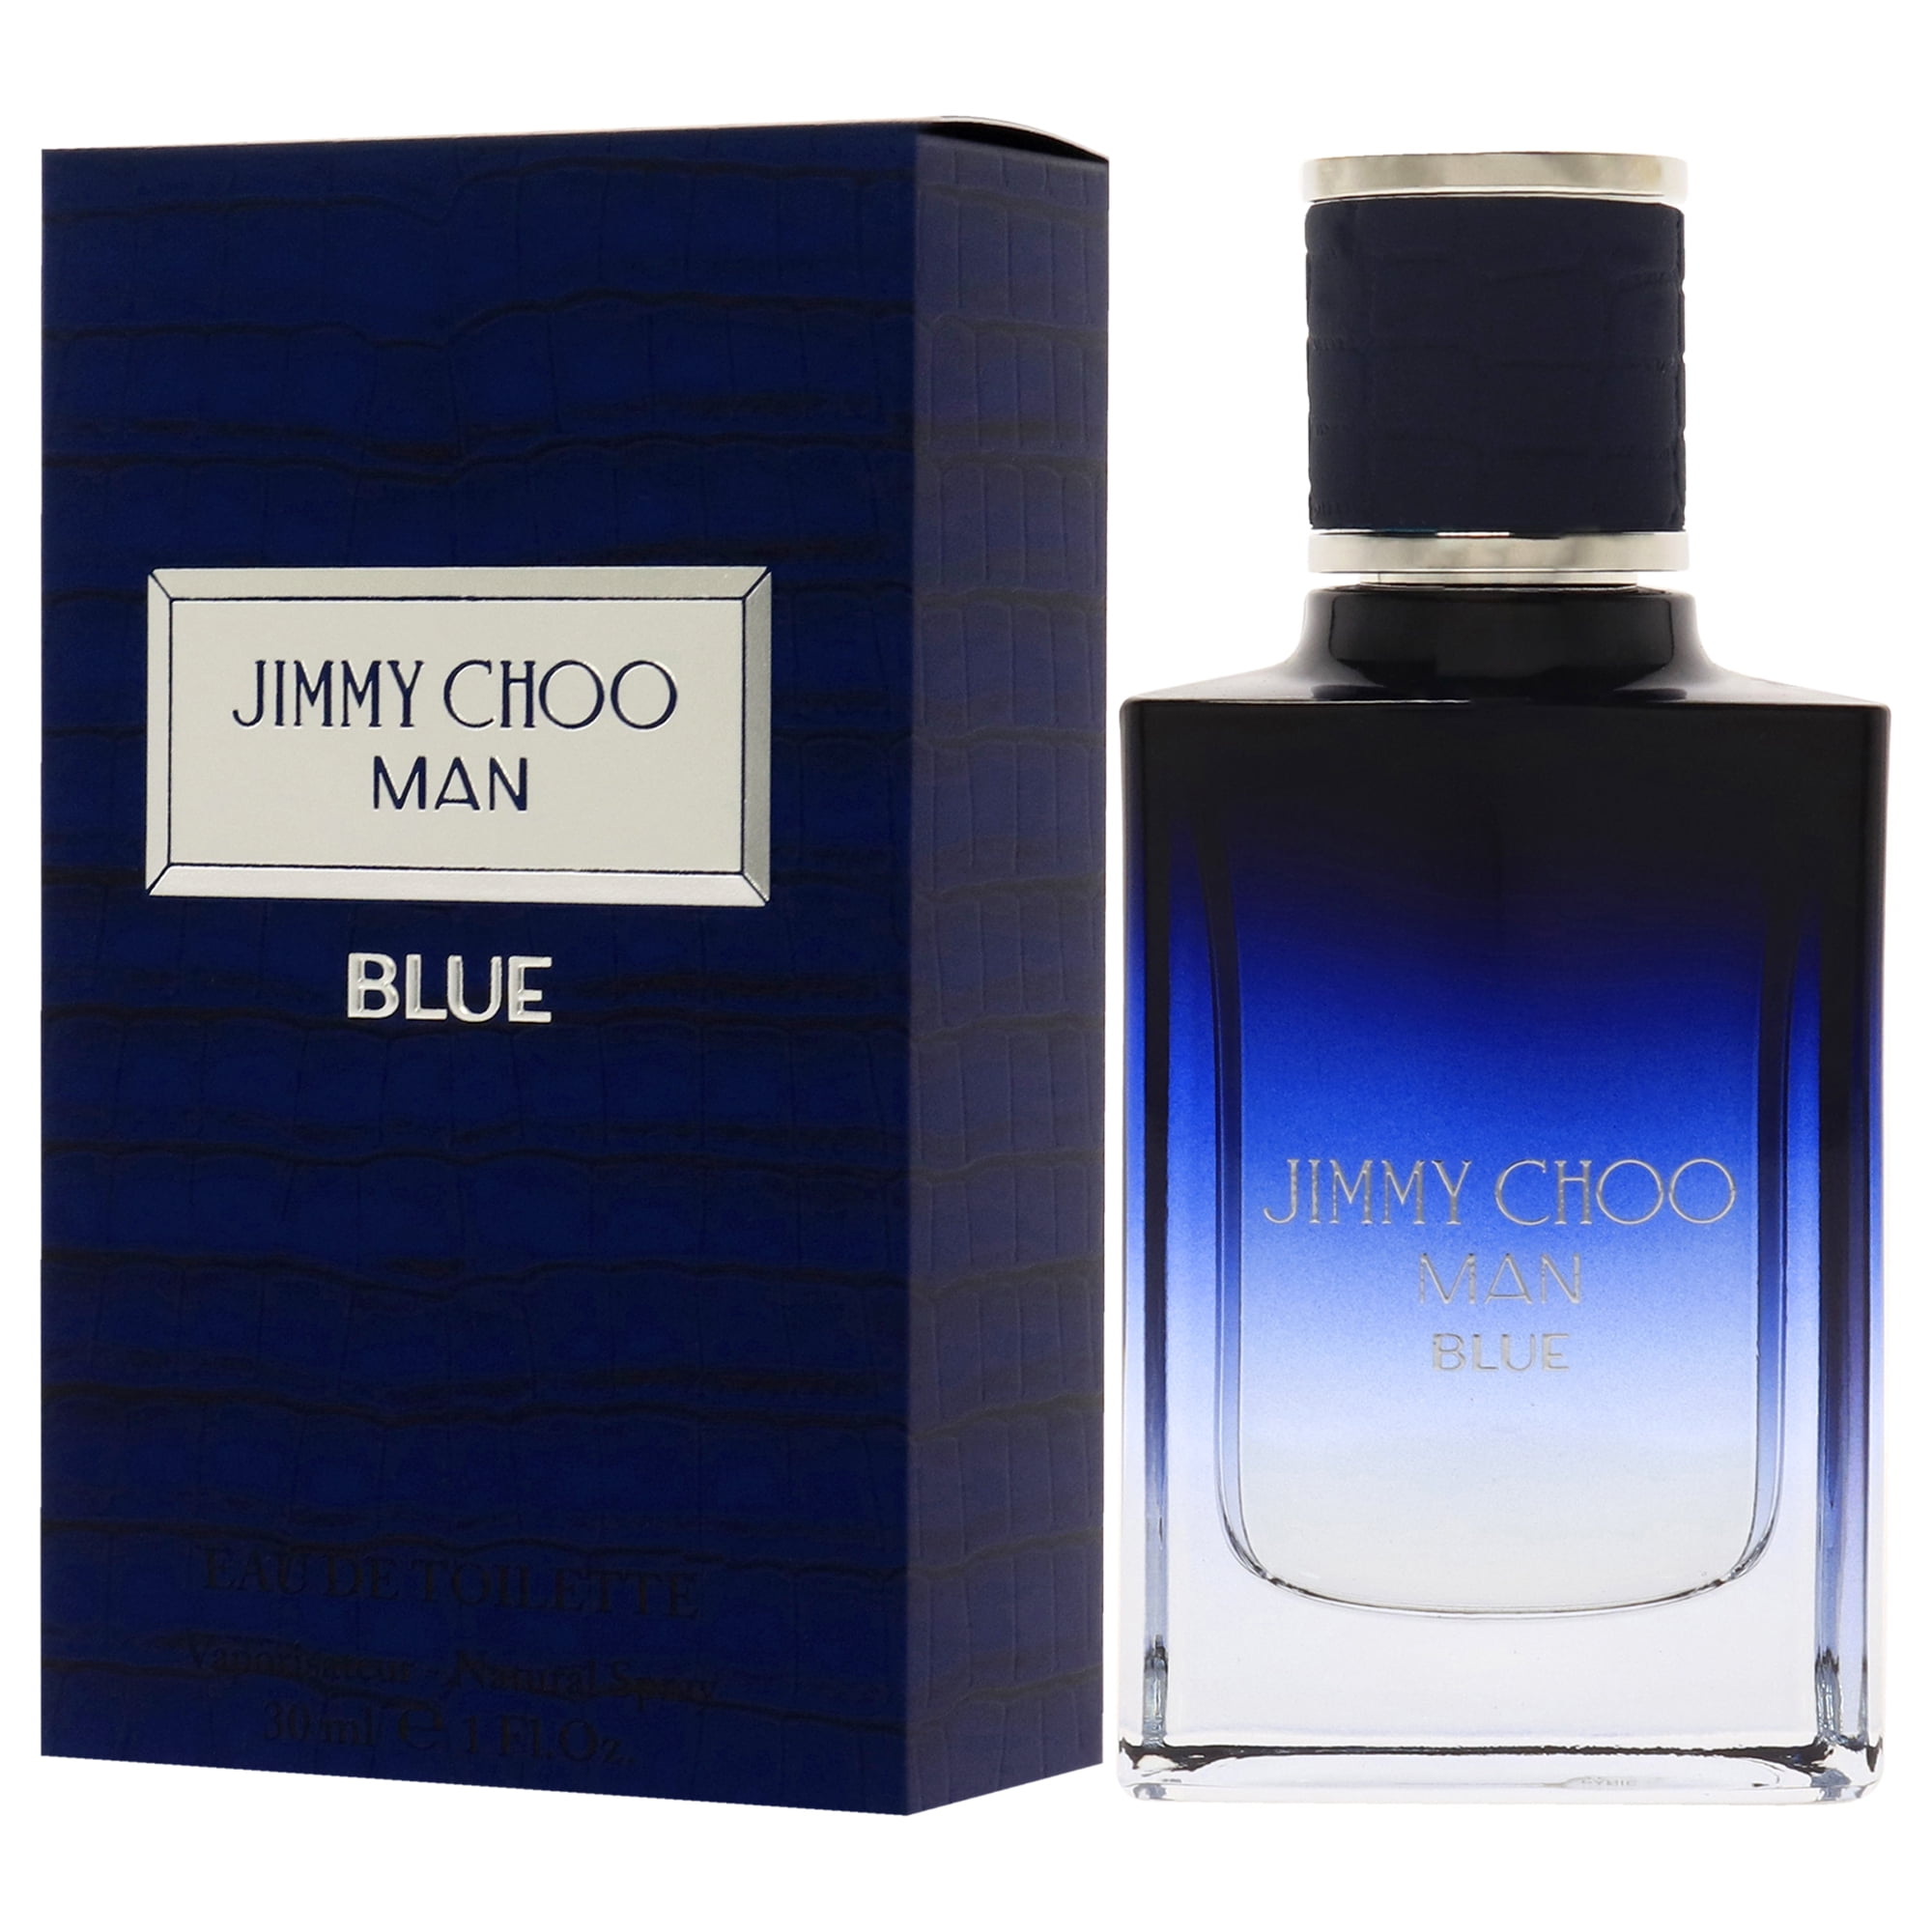 Jimmy Choo Man Blue Eau De Toilette Spray 50ml Germany